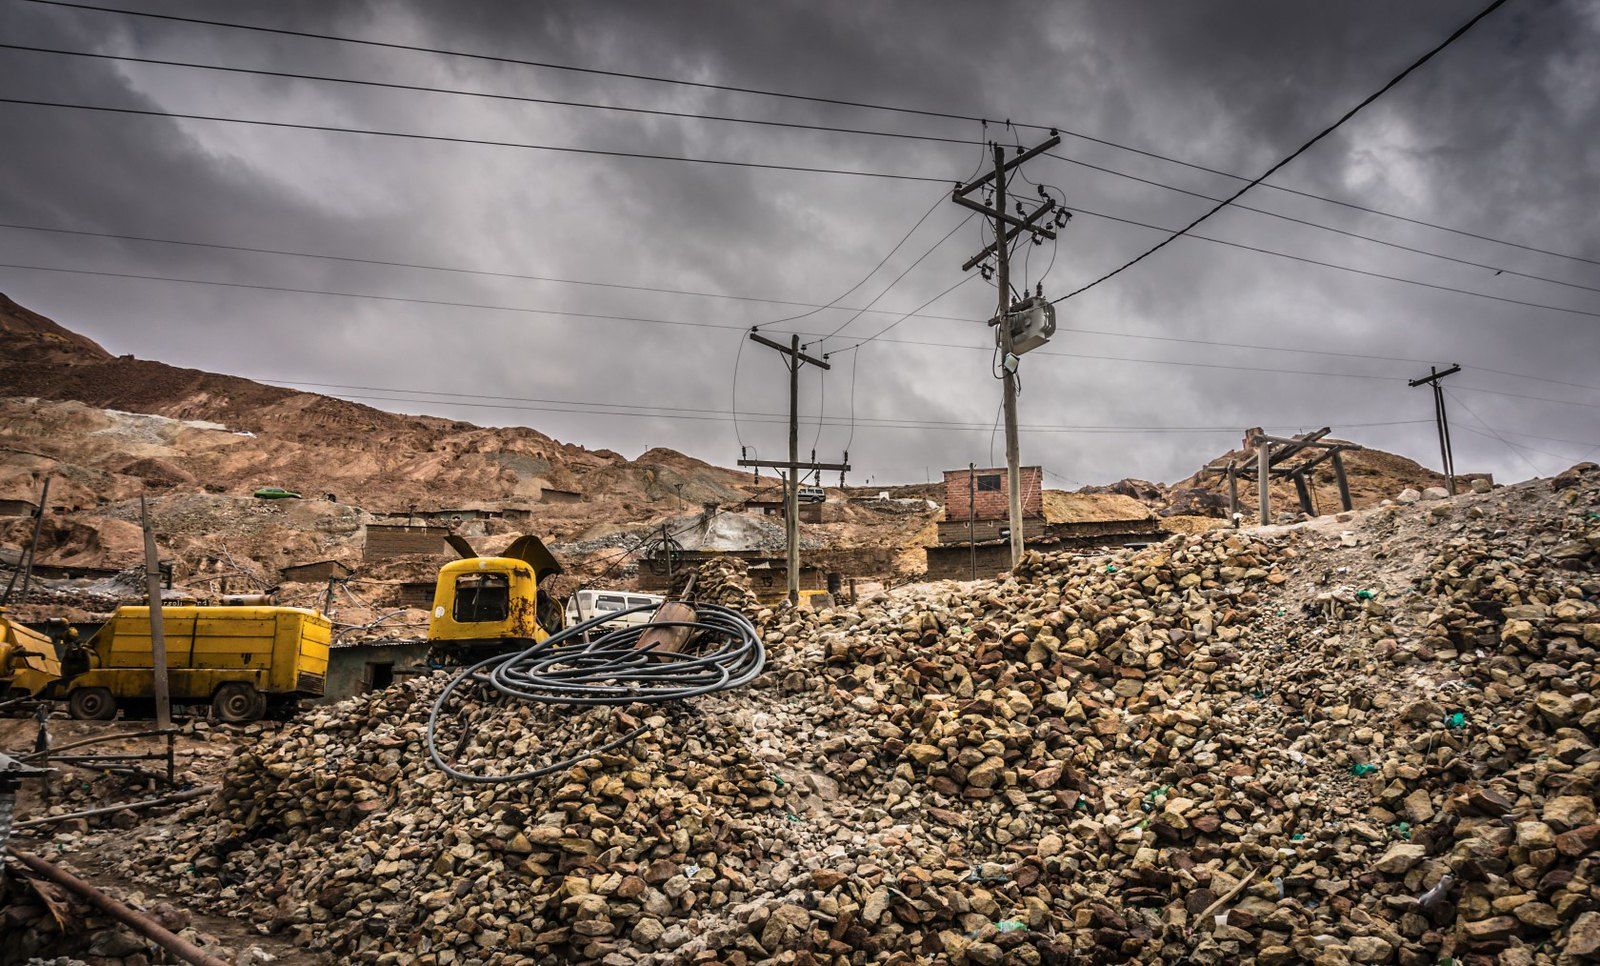 Zona minera en Potosí, Bolivia. FLICKR/BORIS G BAJO LICENCIA CC BY-NC-SA 2.0